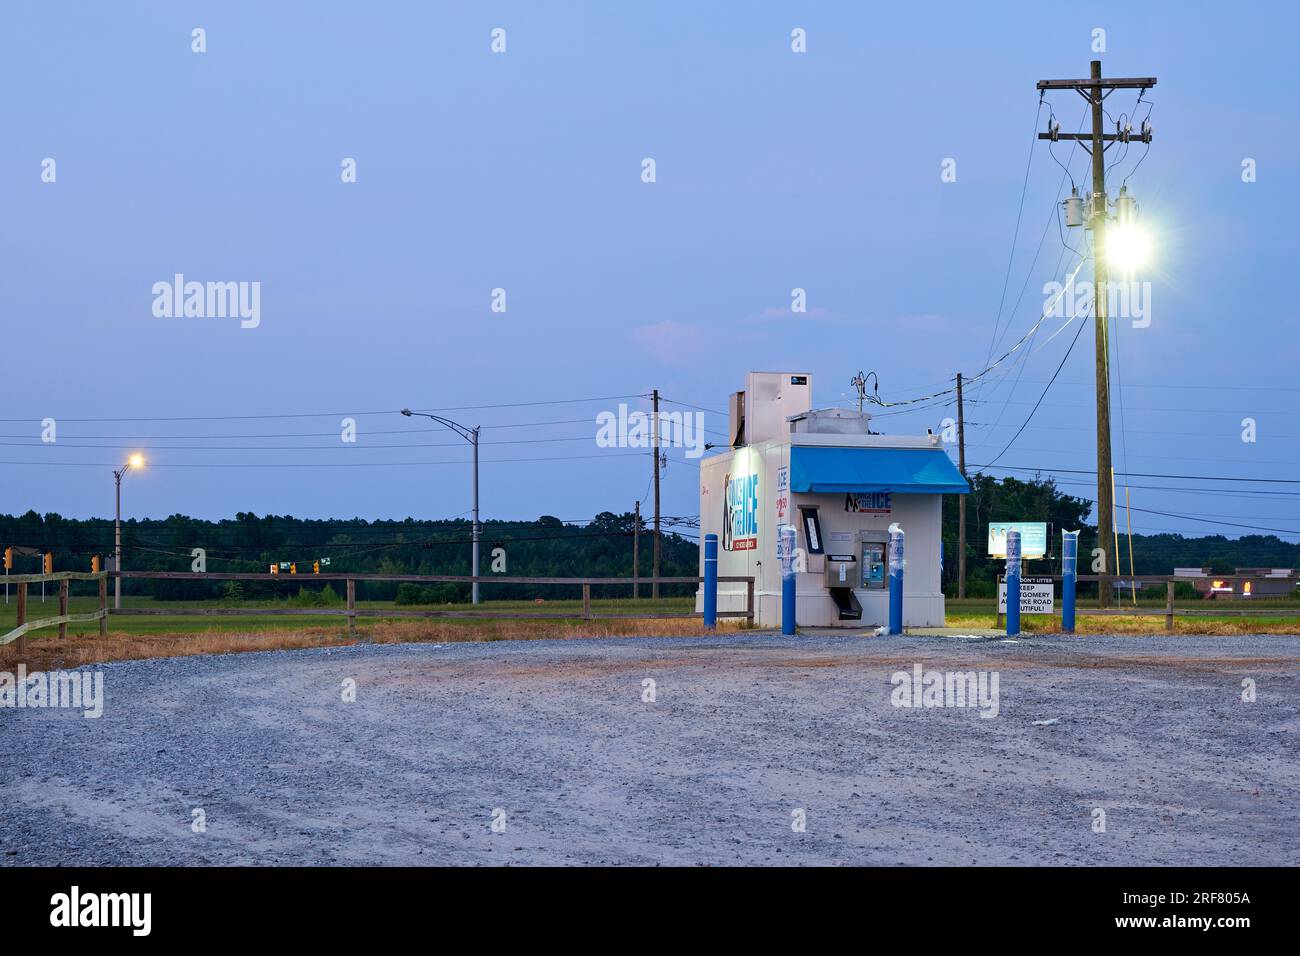 Große, eigenständige Eismaschine in der Nacht für Do-it-yourself-Käufe von Eis in Taschen, beliebt während der heißen Sommermonate in Montgomery, Alabama, USA. Stockfoto